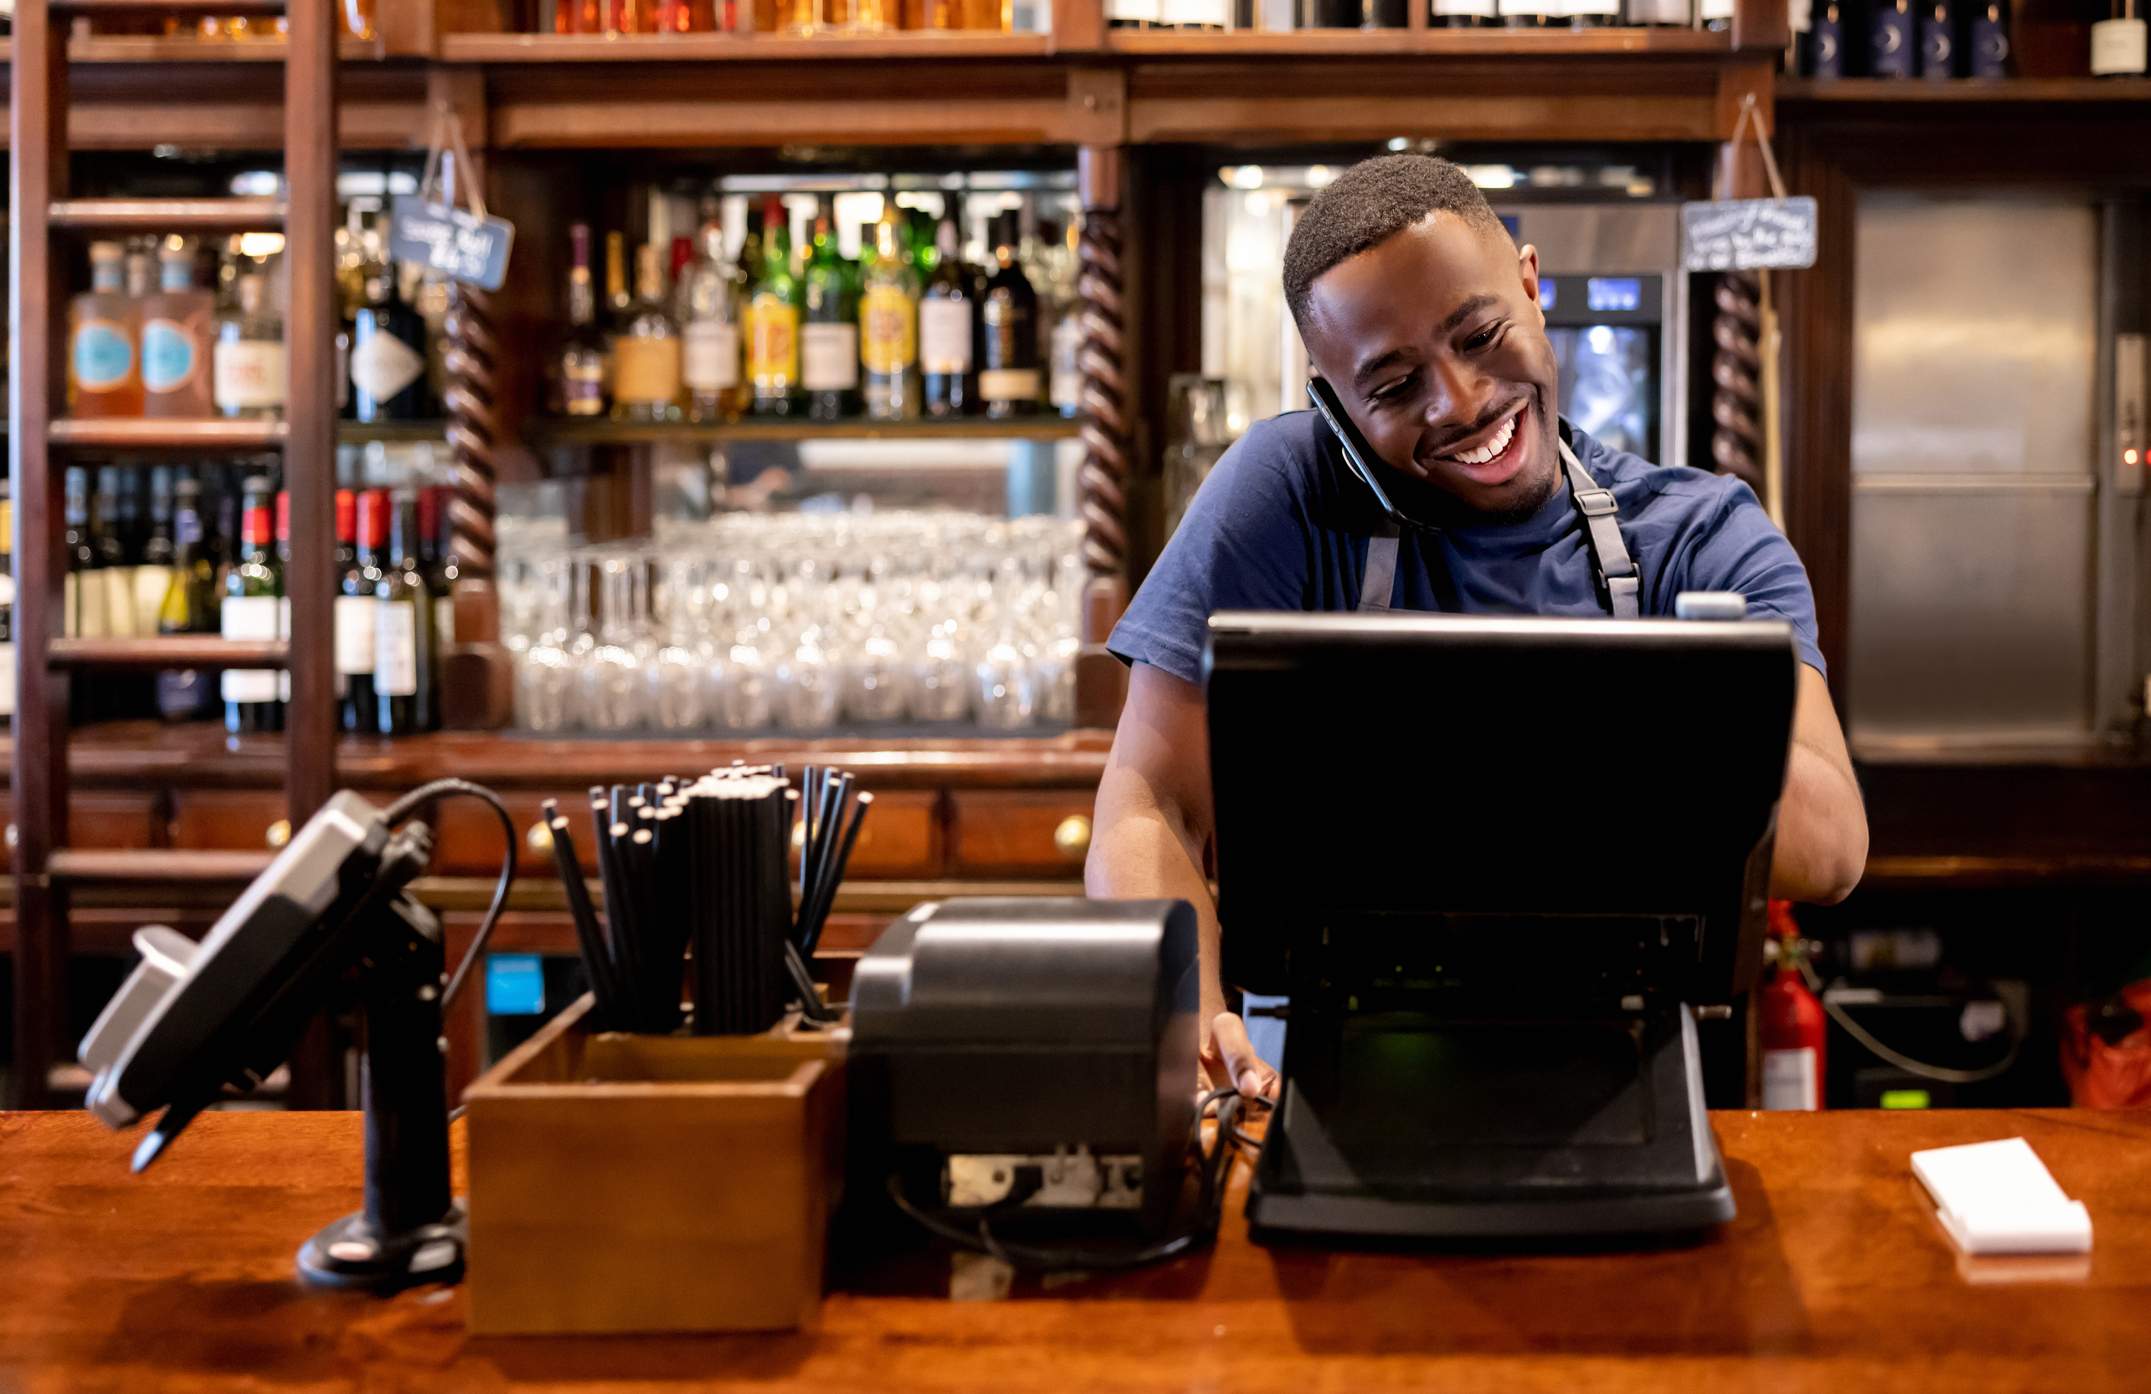 Imagen que muestra a un mesero sonriente con camiseta azul y un delantal negro hablando por teléfono mientras usa una computadora situada frente a él. Hay un bar con repisas y botellas en el fondo.